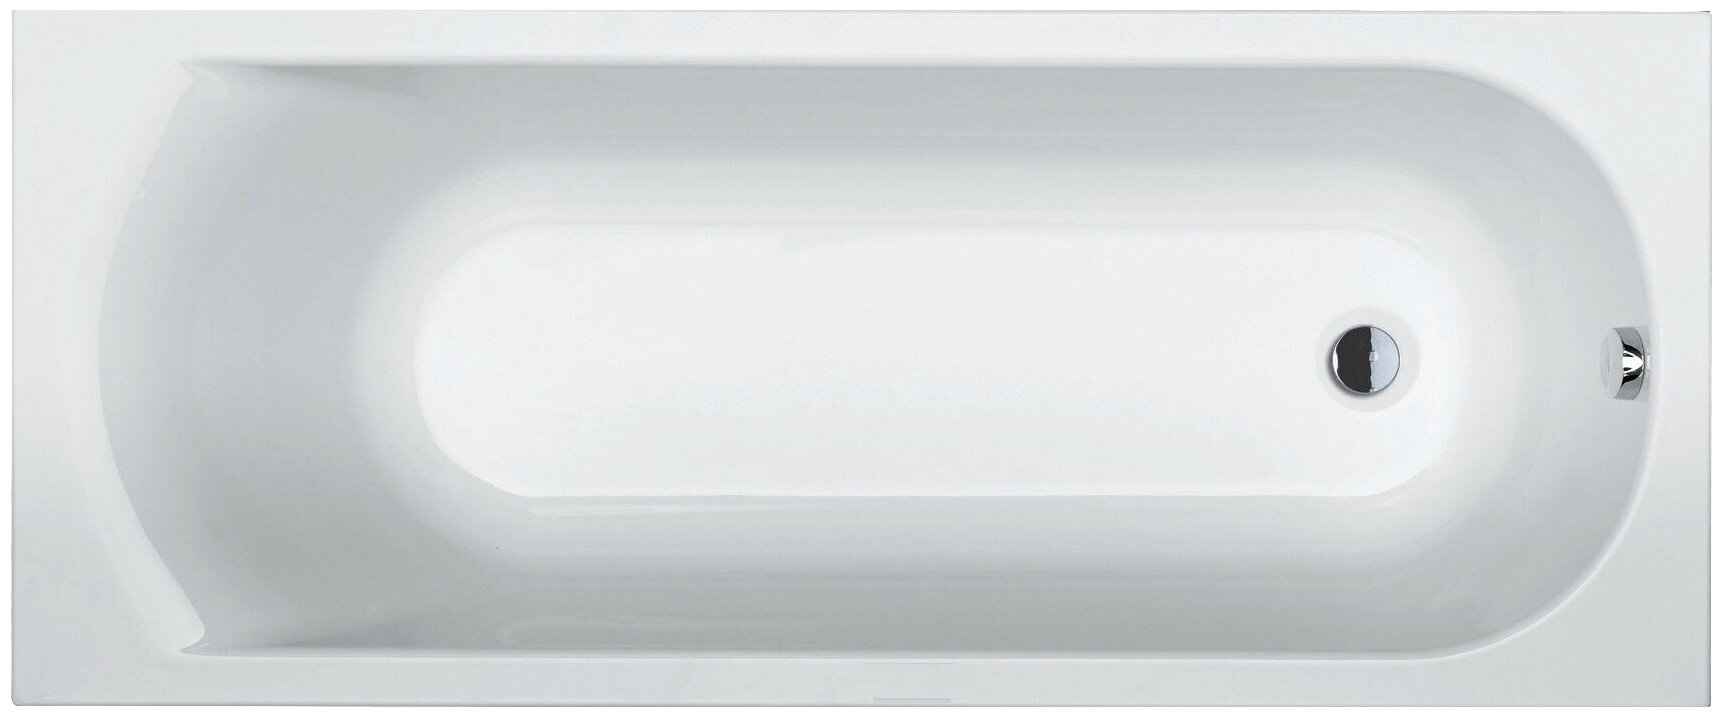 Ванна Riho Miami 170x70 без гидромассажа, акрил, глянцевое покрытие, белый 